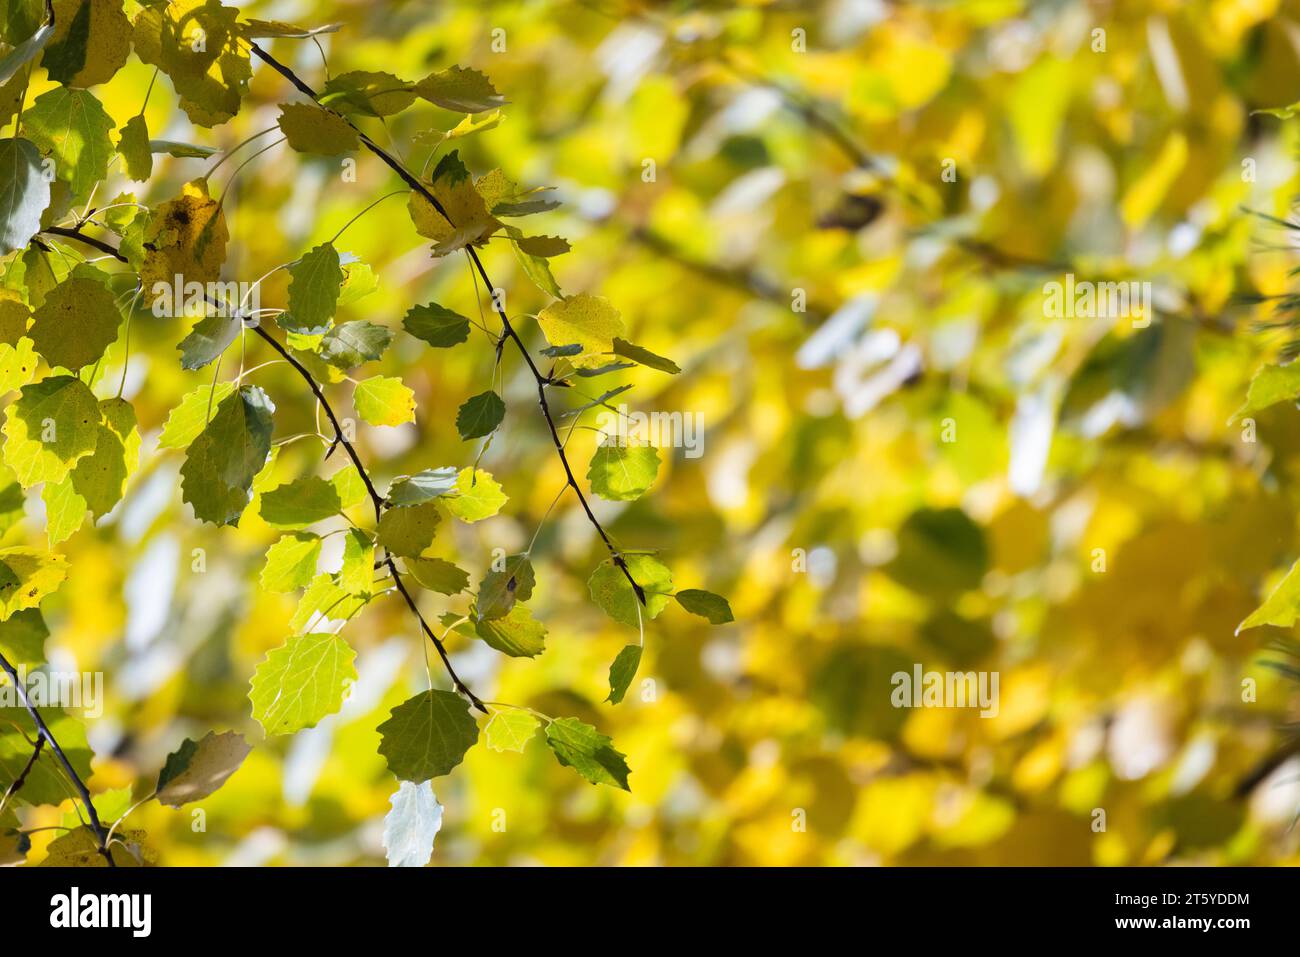 Les feuilles jaunes d'automne sont sur fond flou, tremble, photo naturelle Banque D'Images